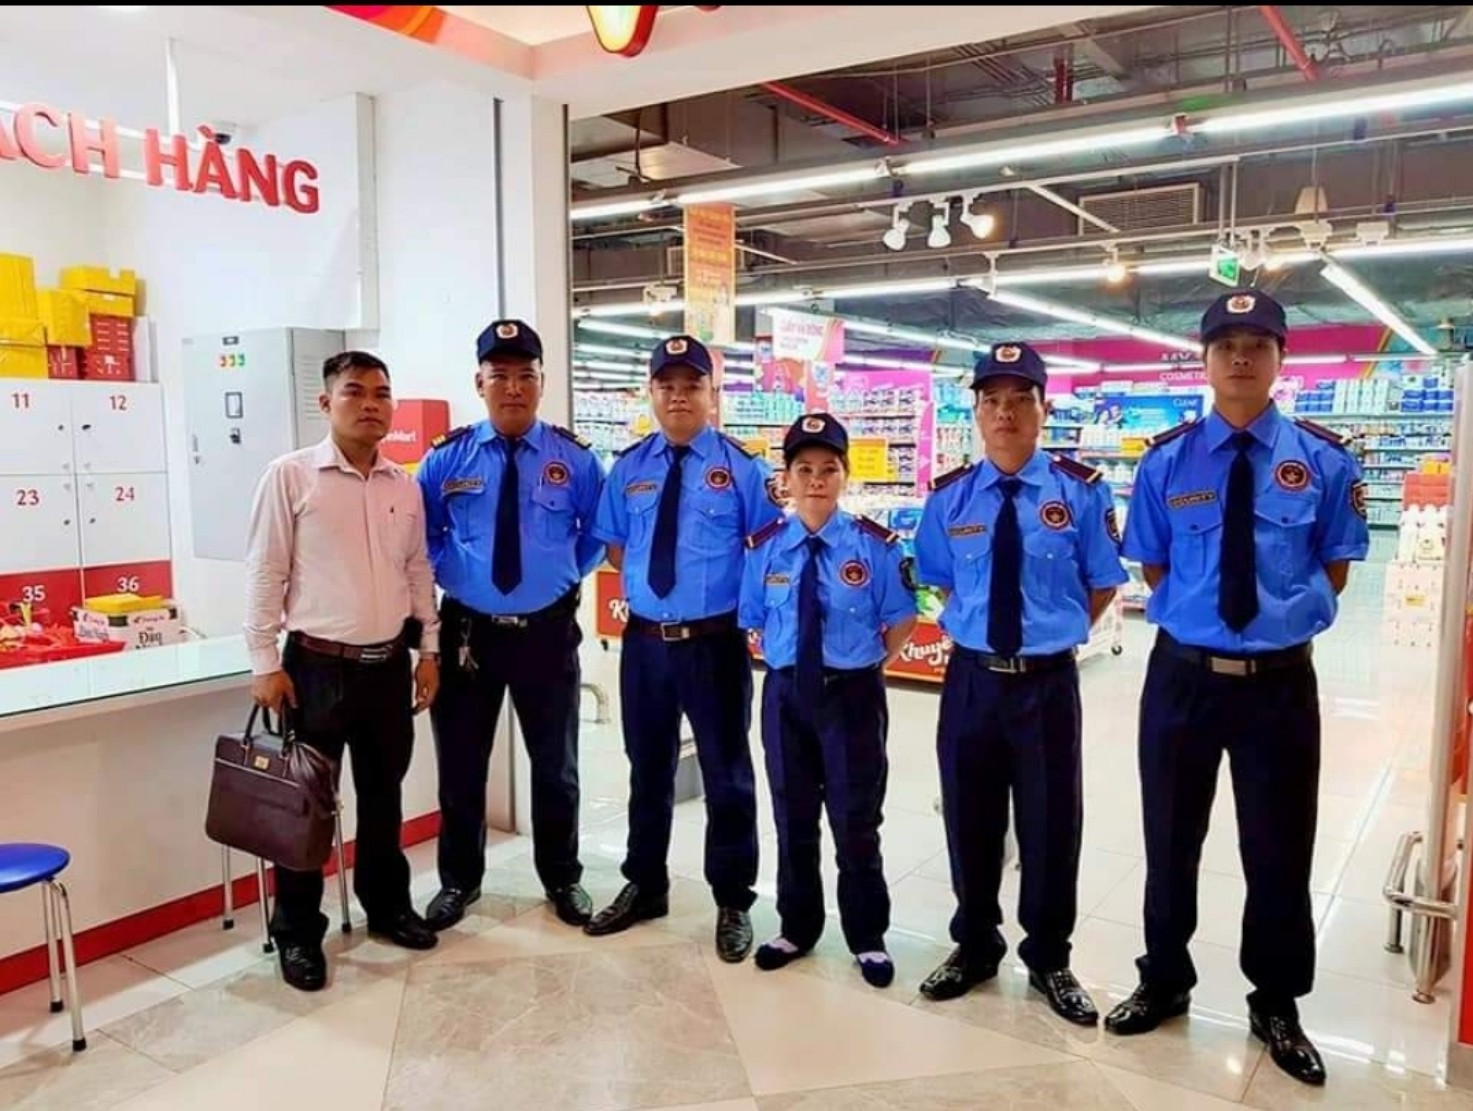 Kinh nghiệm lựa chọn công ty bảo vệ tại Đà Nẵng uy tín và chất lượng